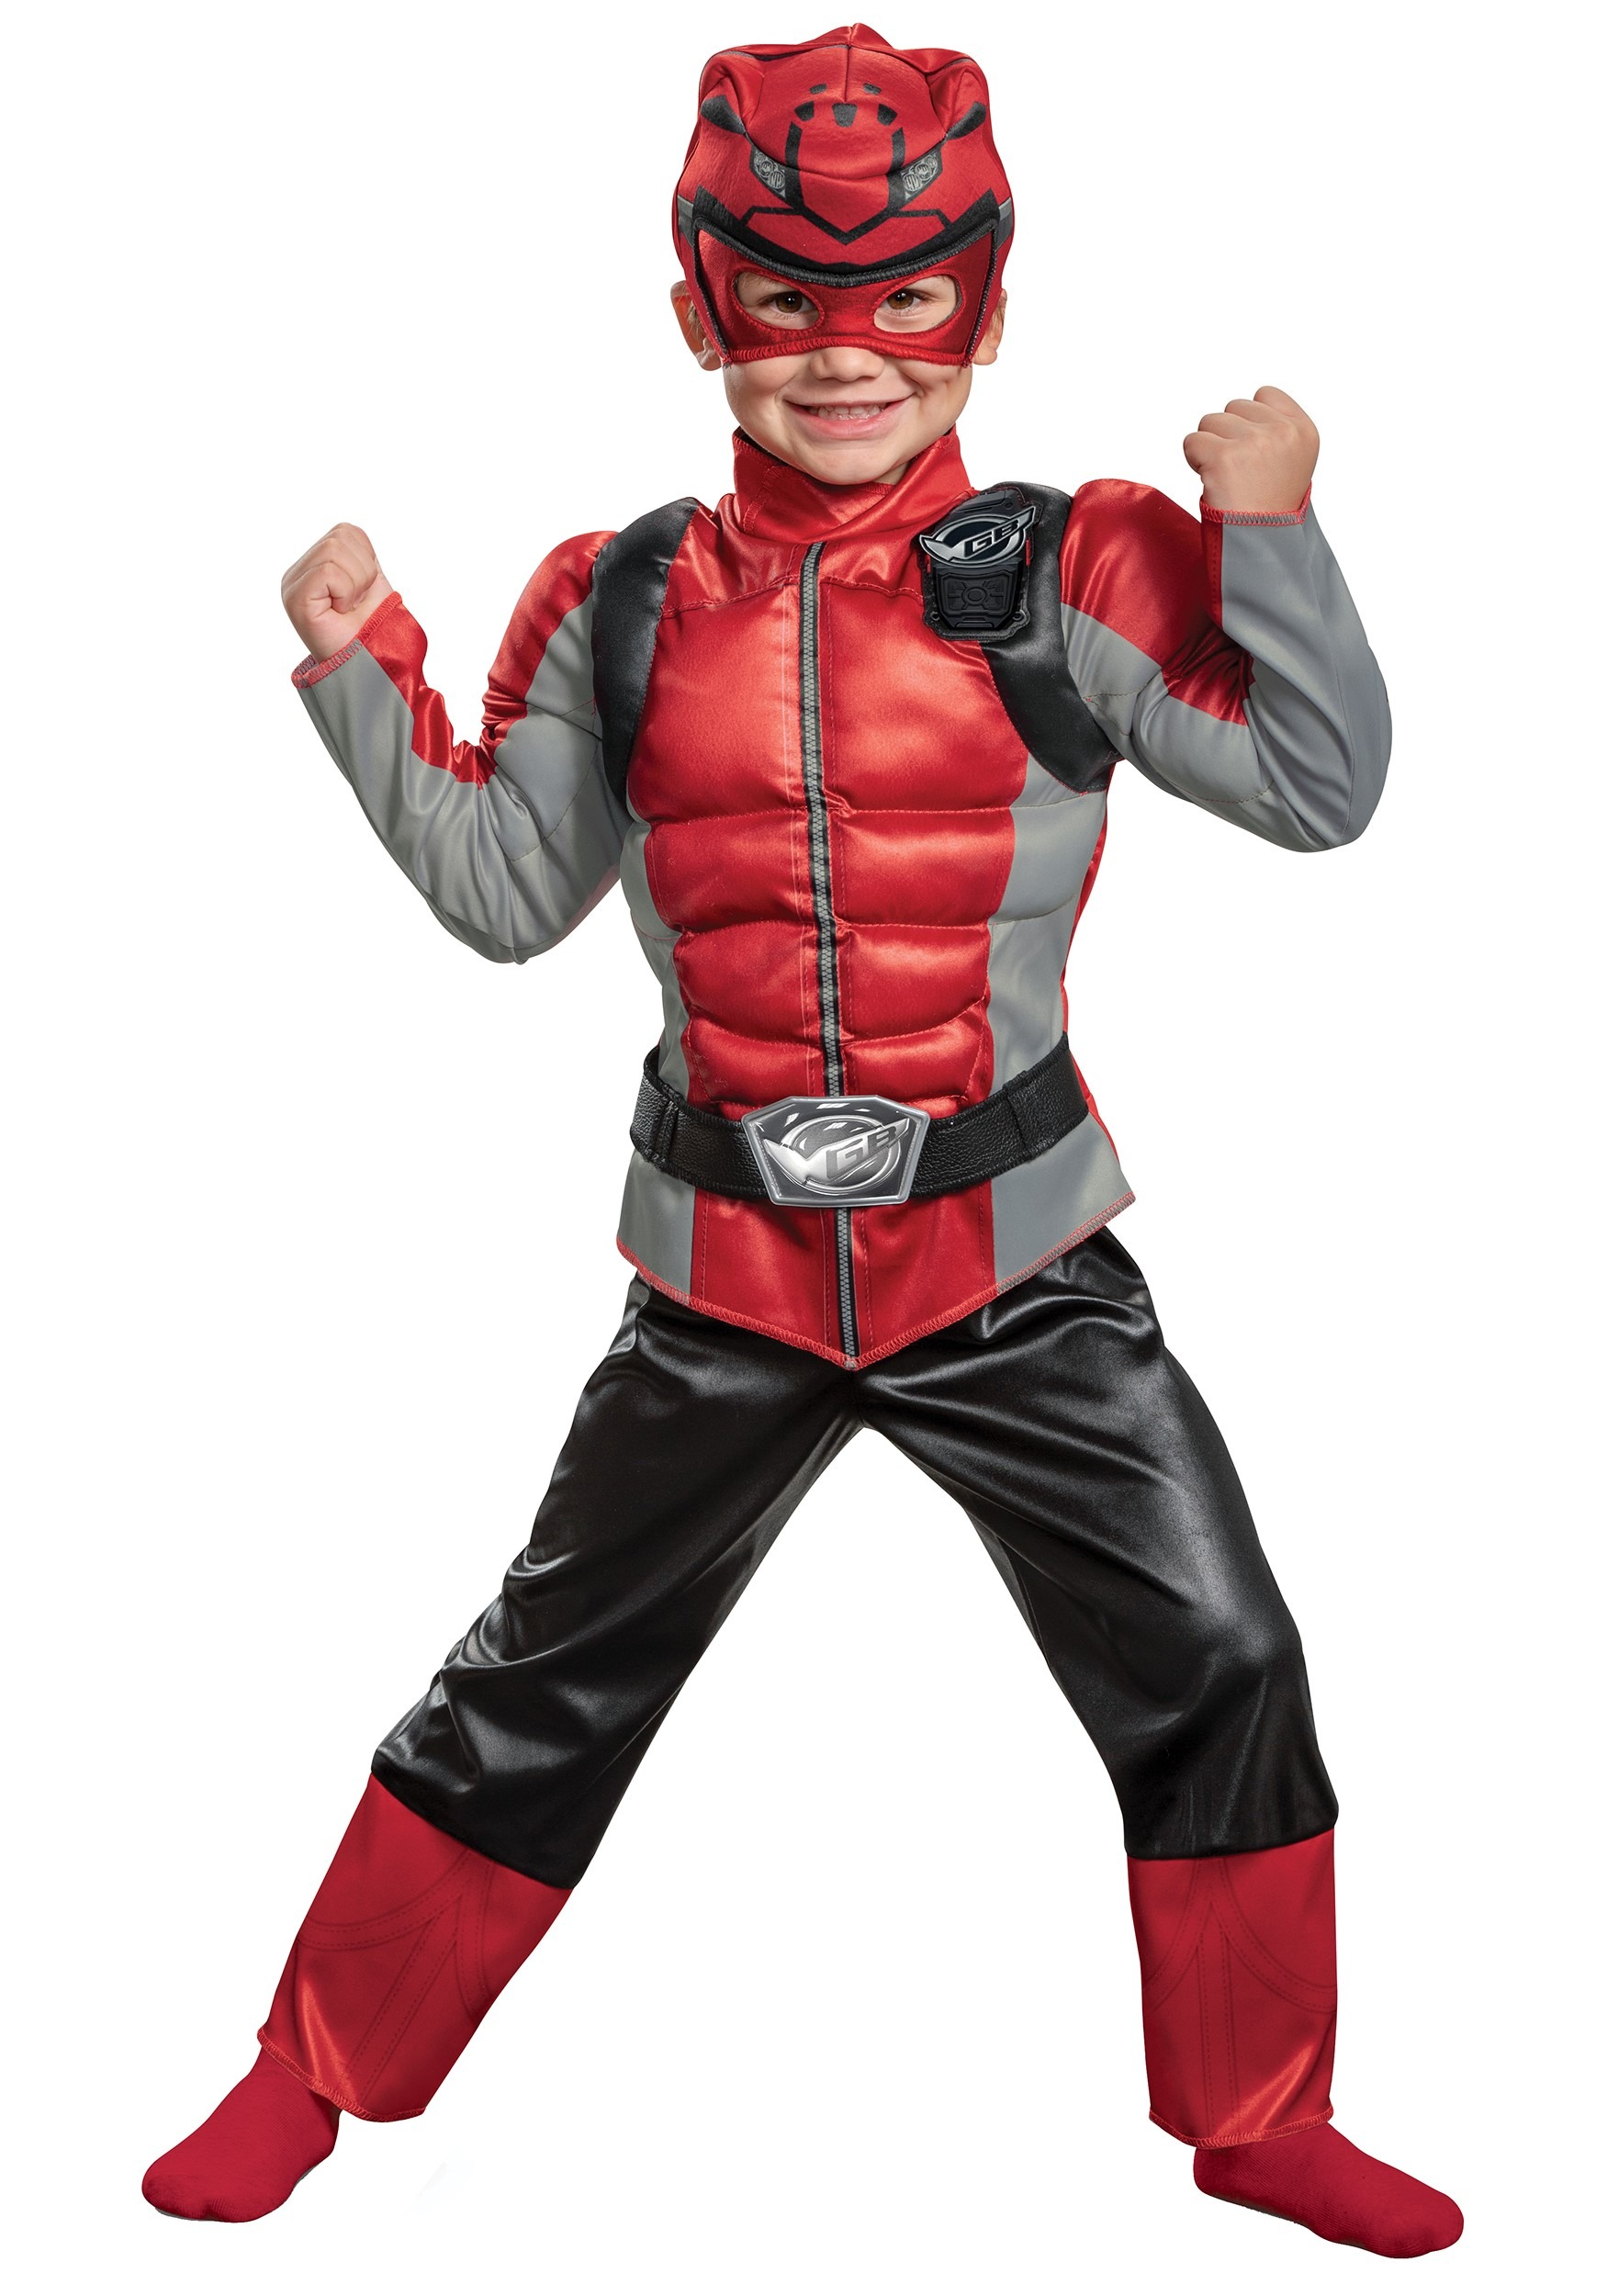 Power Rangers Beast Morphers Red Ranger for Kids Costume